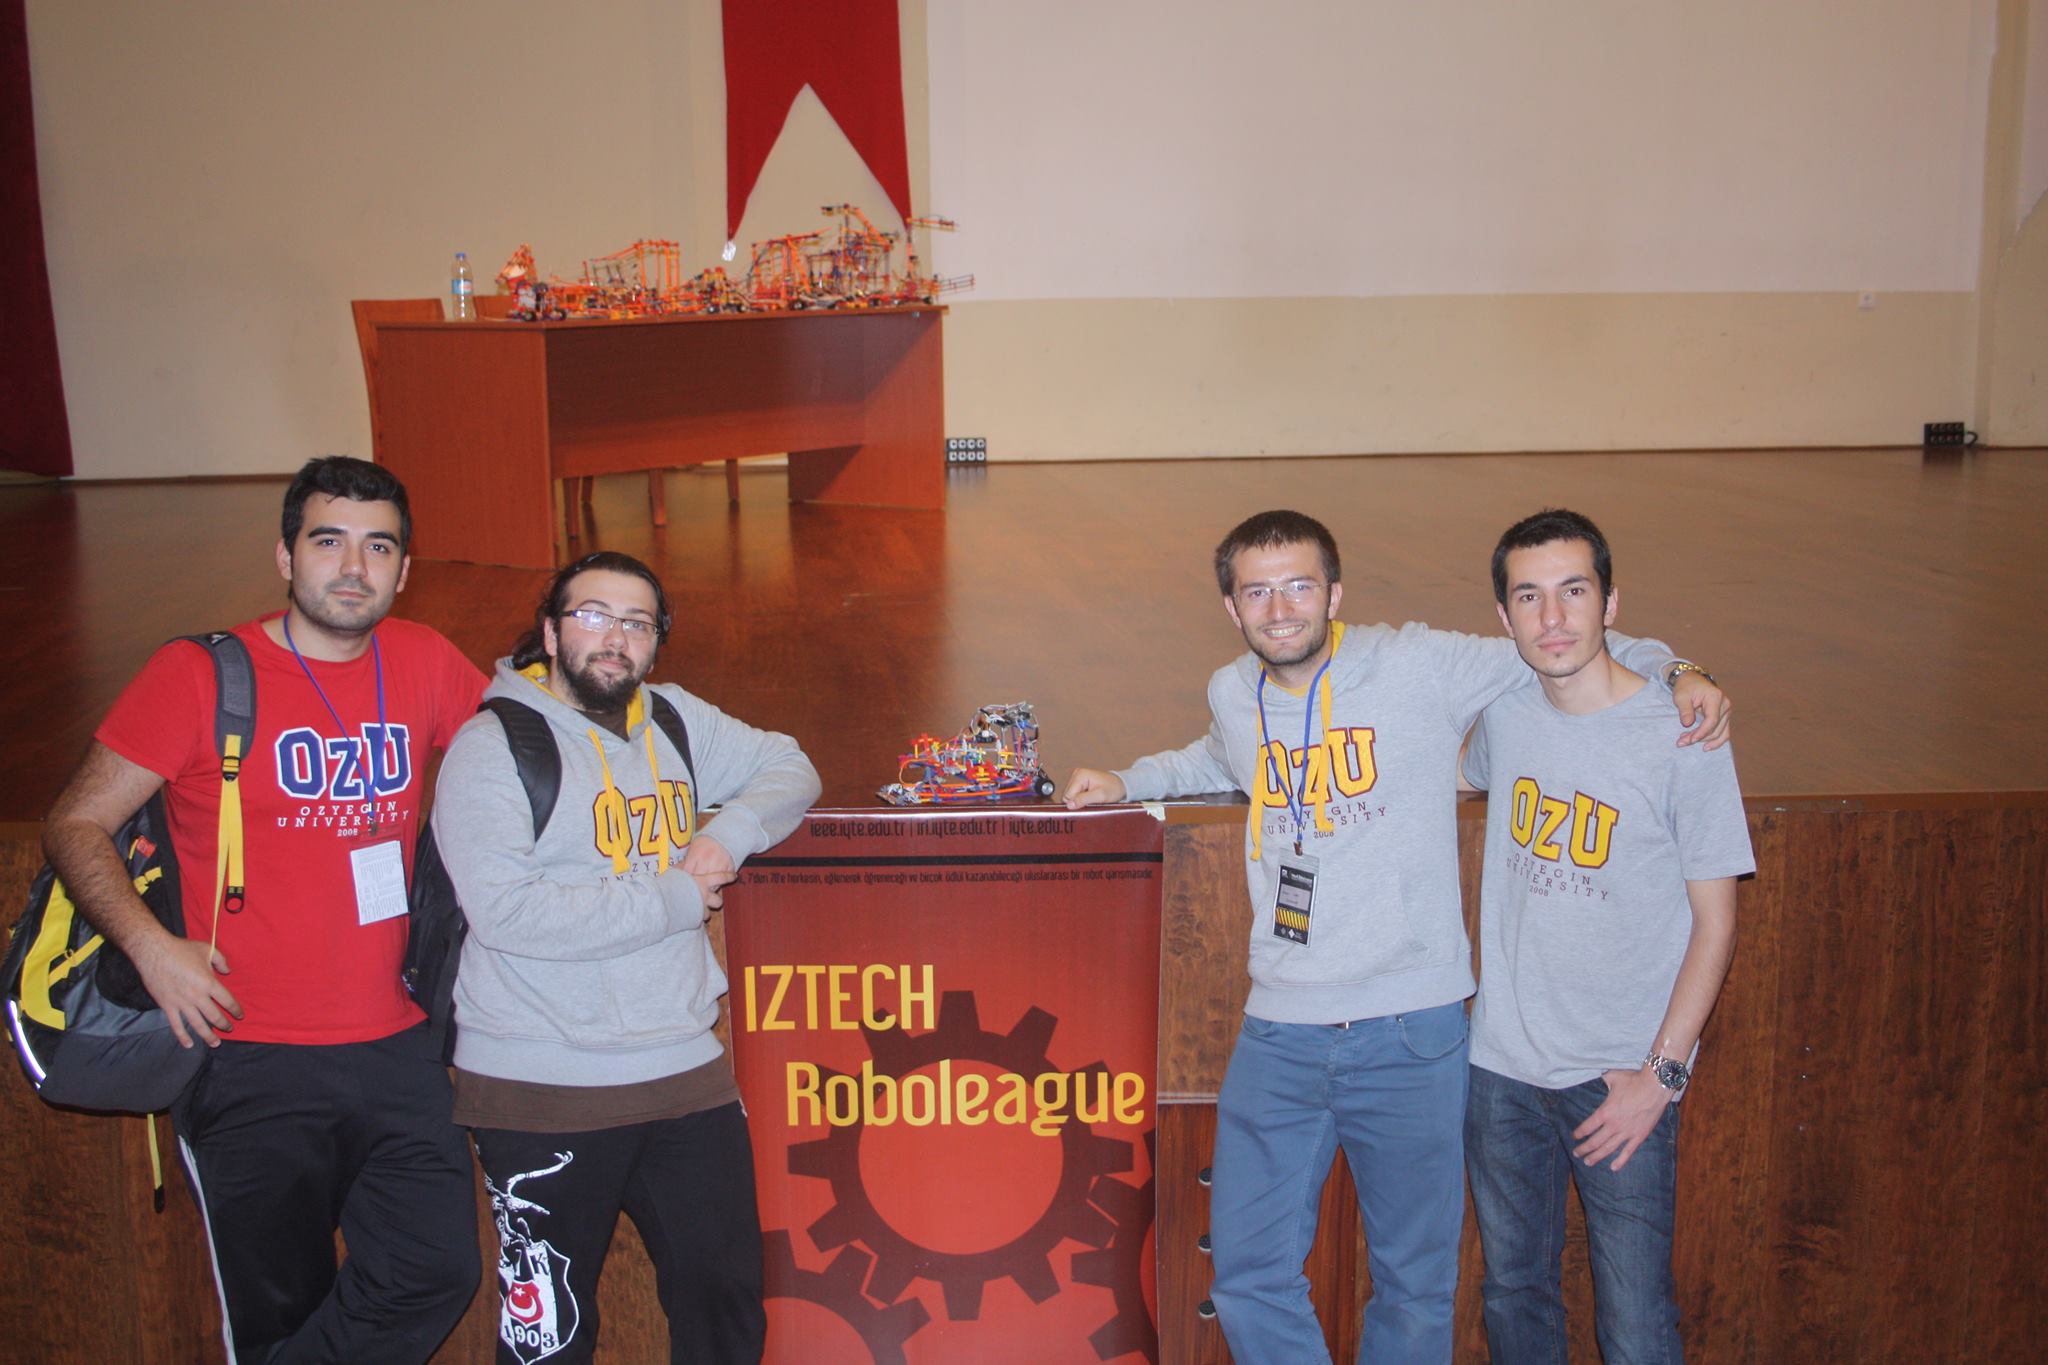 Özyeğin Üniversitesi Teknoloji ve Robotik Kulübü Roboleauge Yarışması'nda Üçüncü Oldu